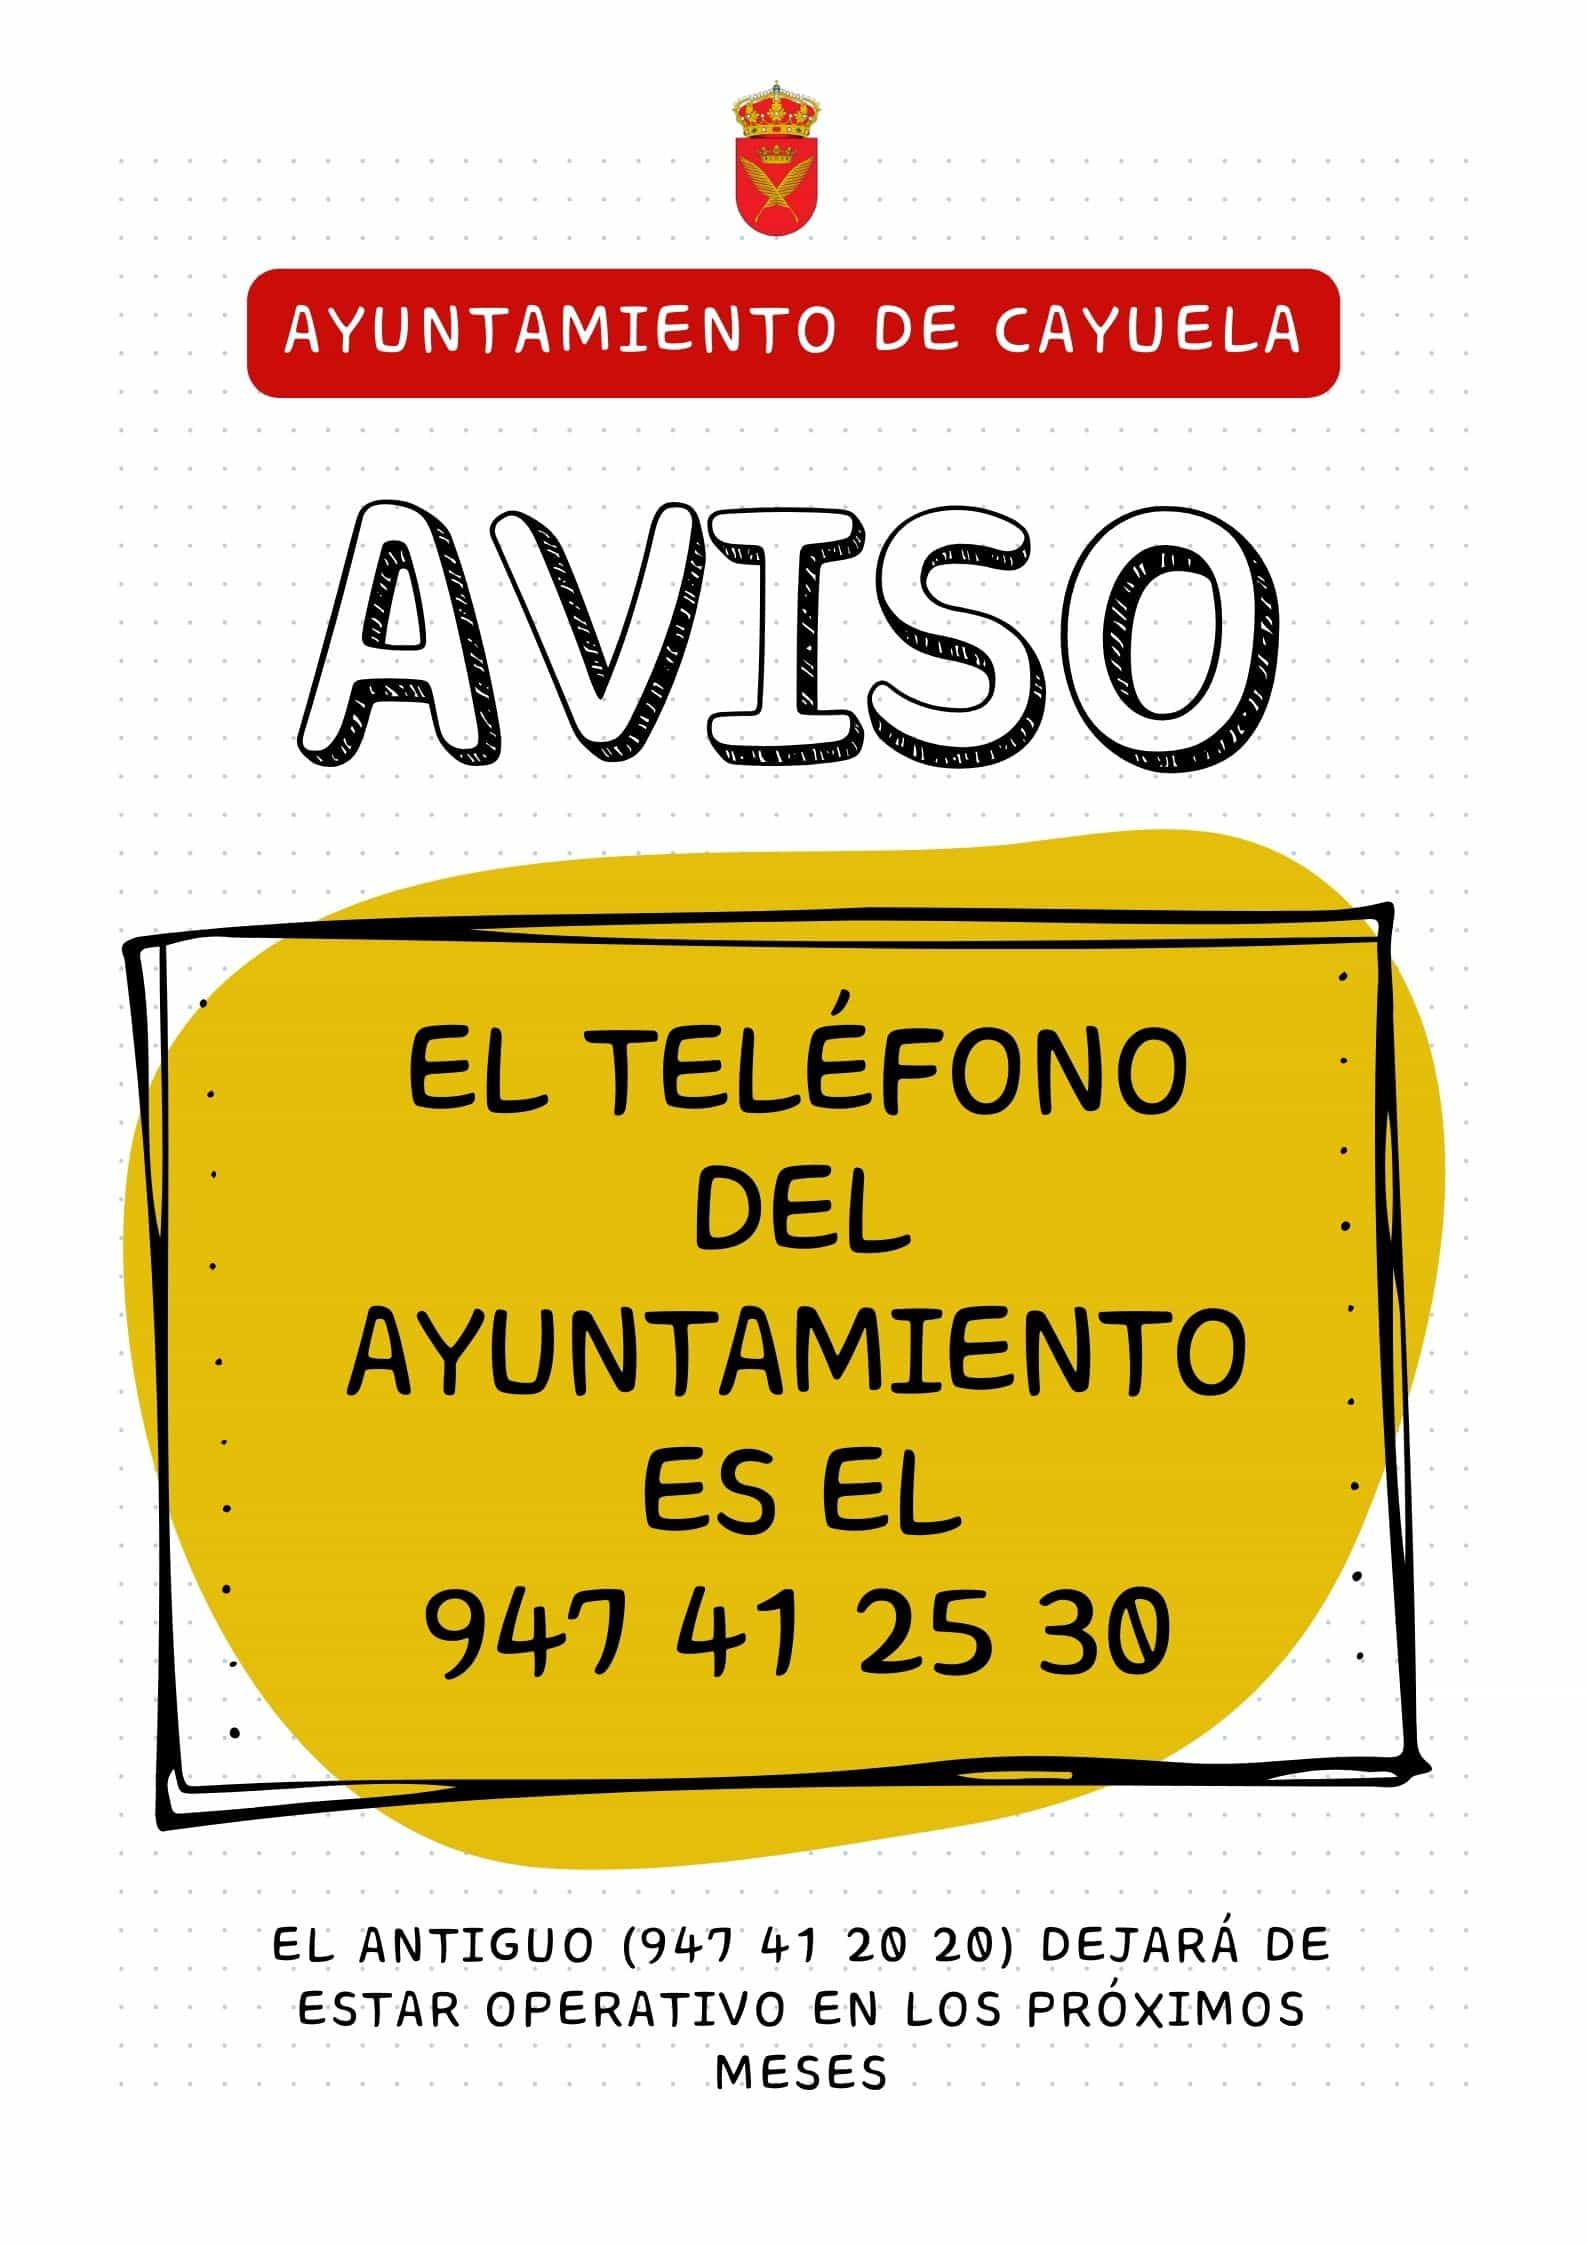 Número de teléfono del ayuntamiento de Cayuela